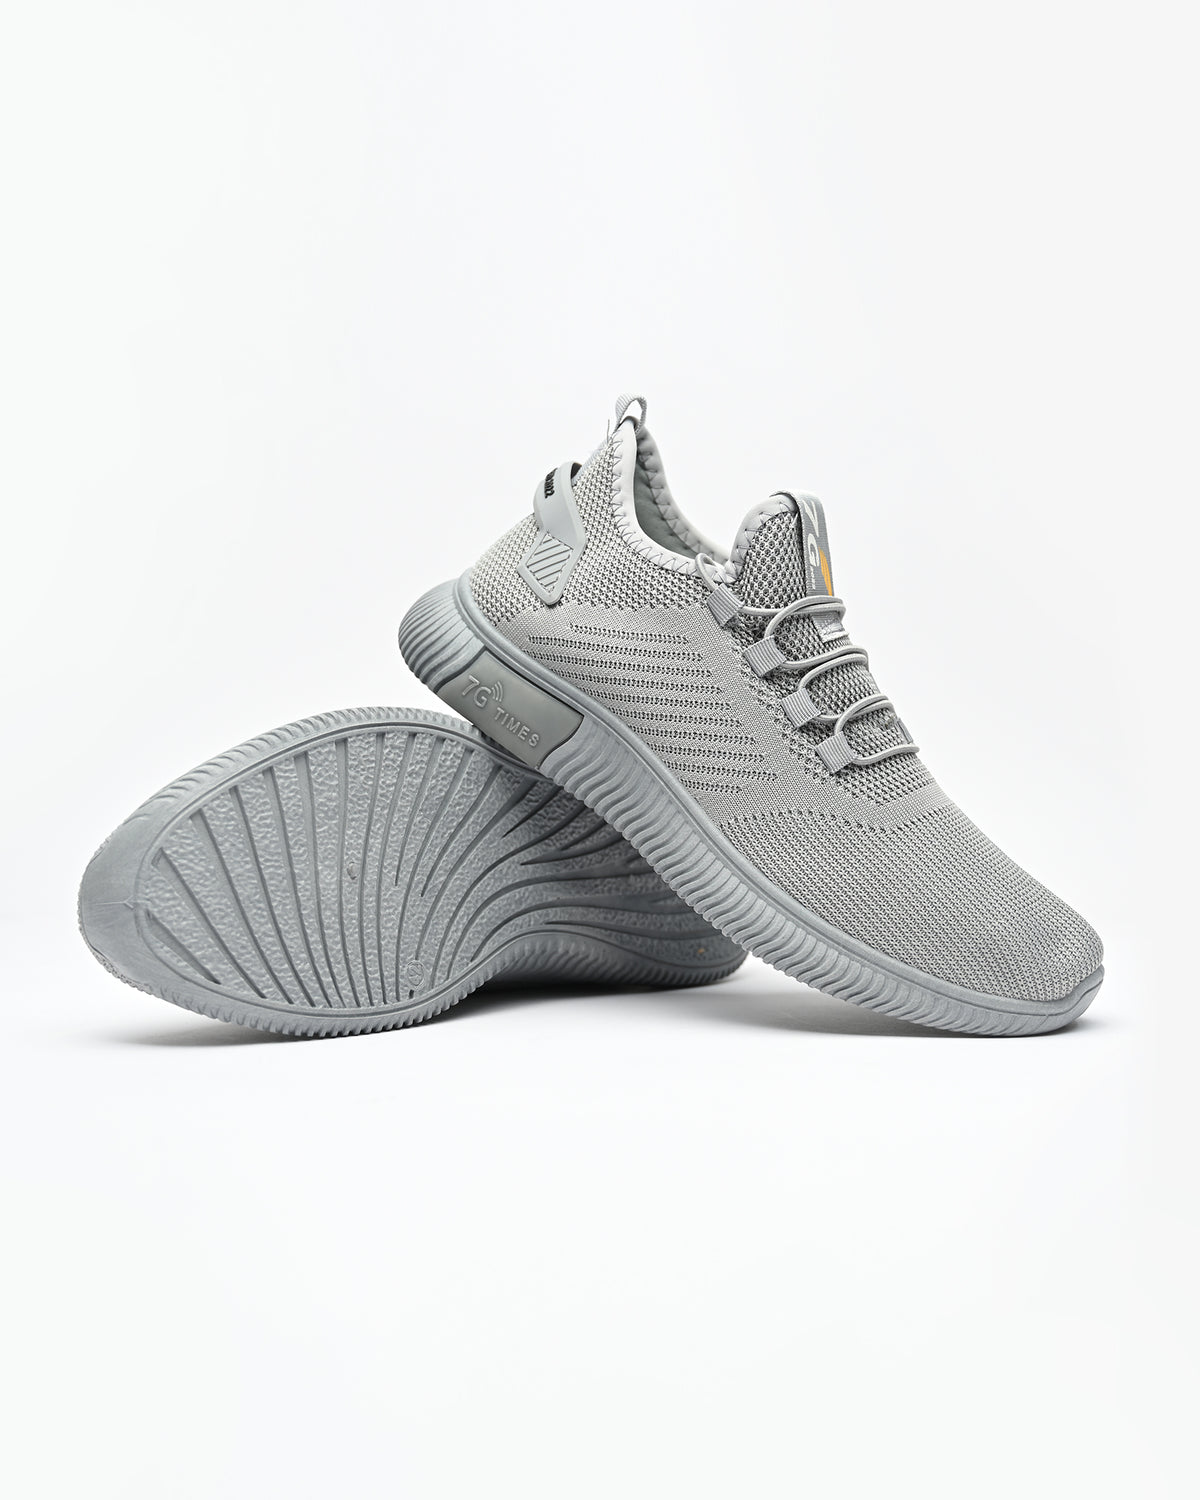 Men's 7G Sneakers - Grey